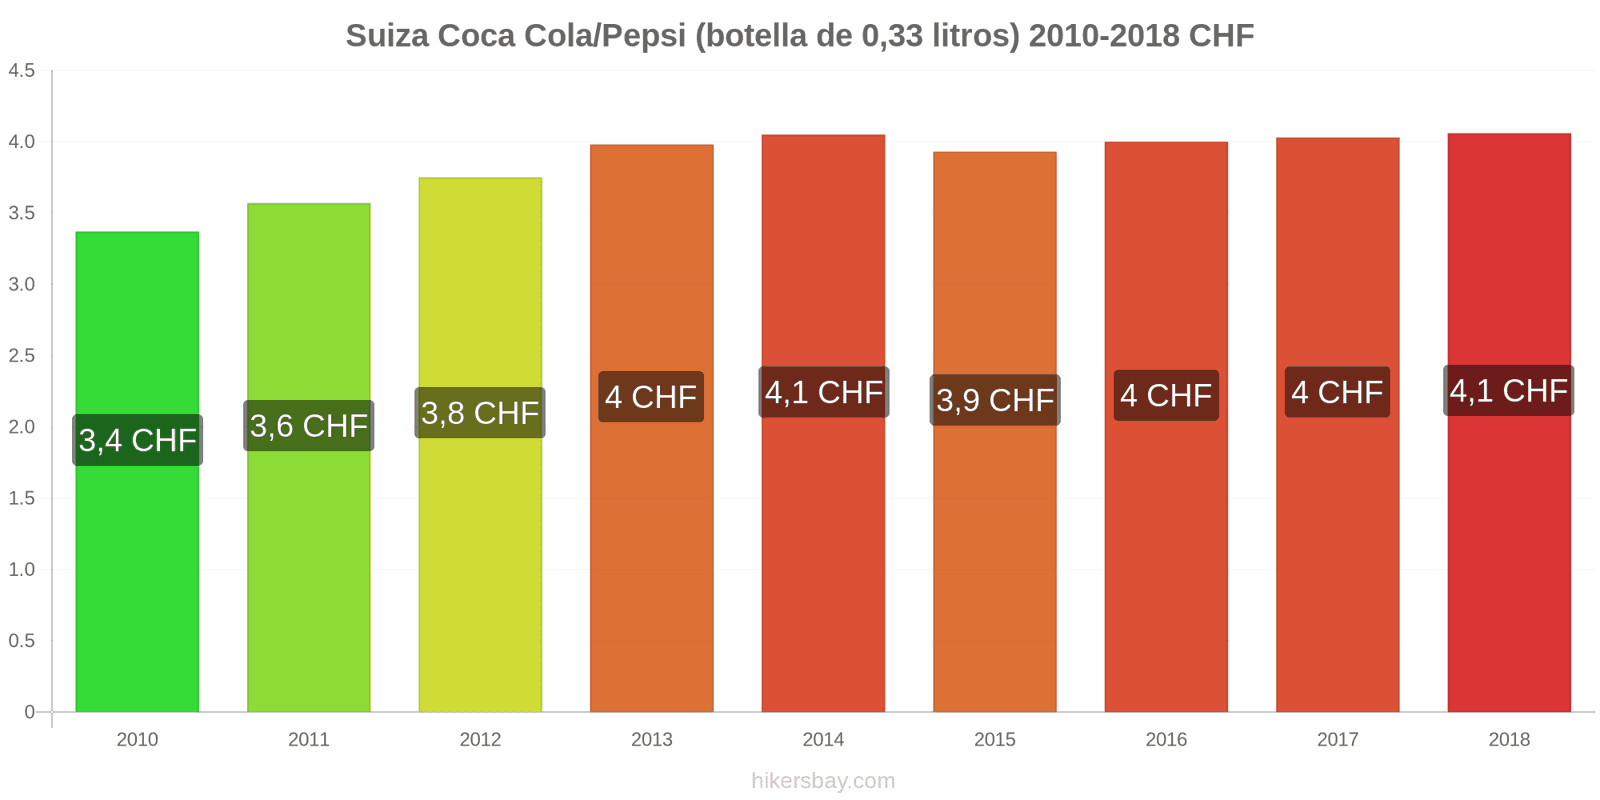 Suiza cambios de precios Coca-Cola/Pepsi (botella de 0.33 litros) hikersbay.com